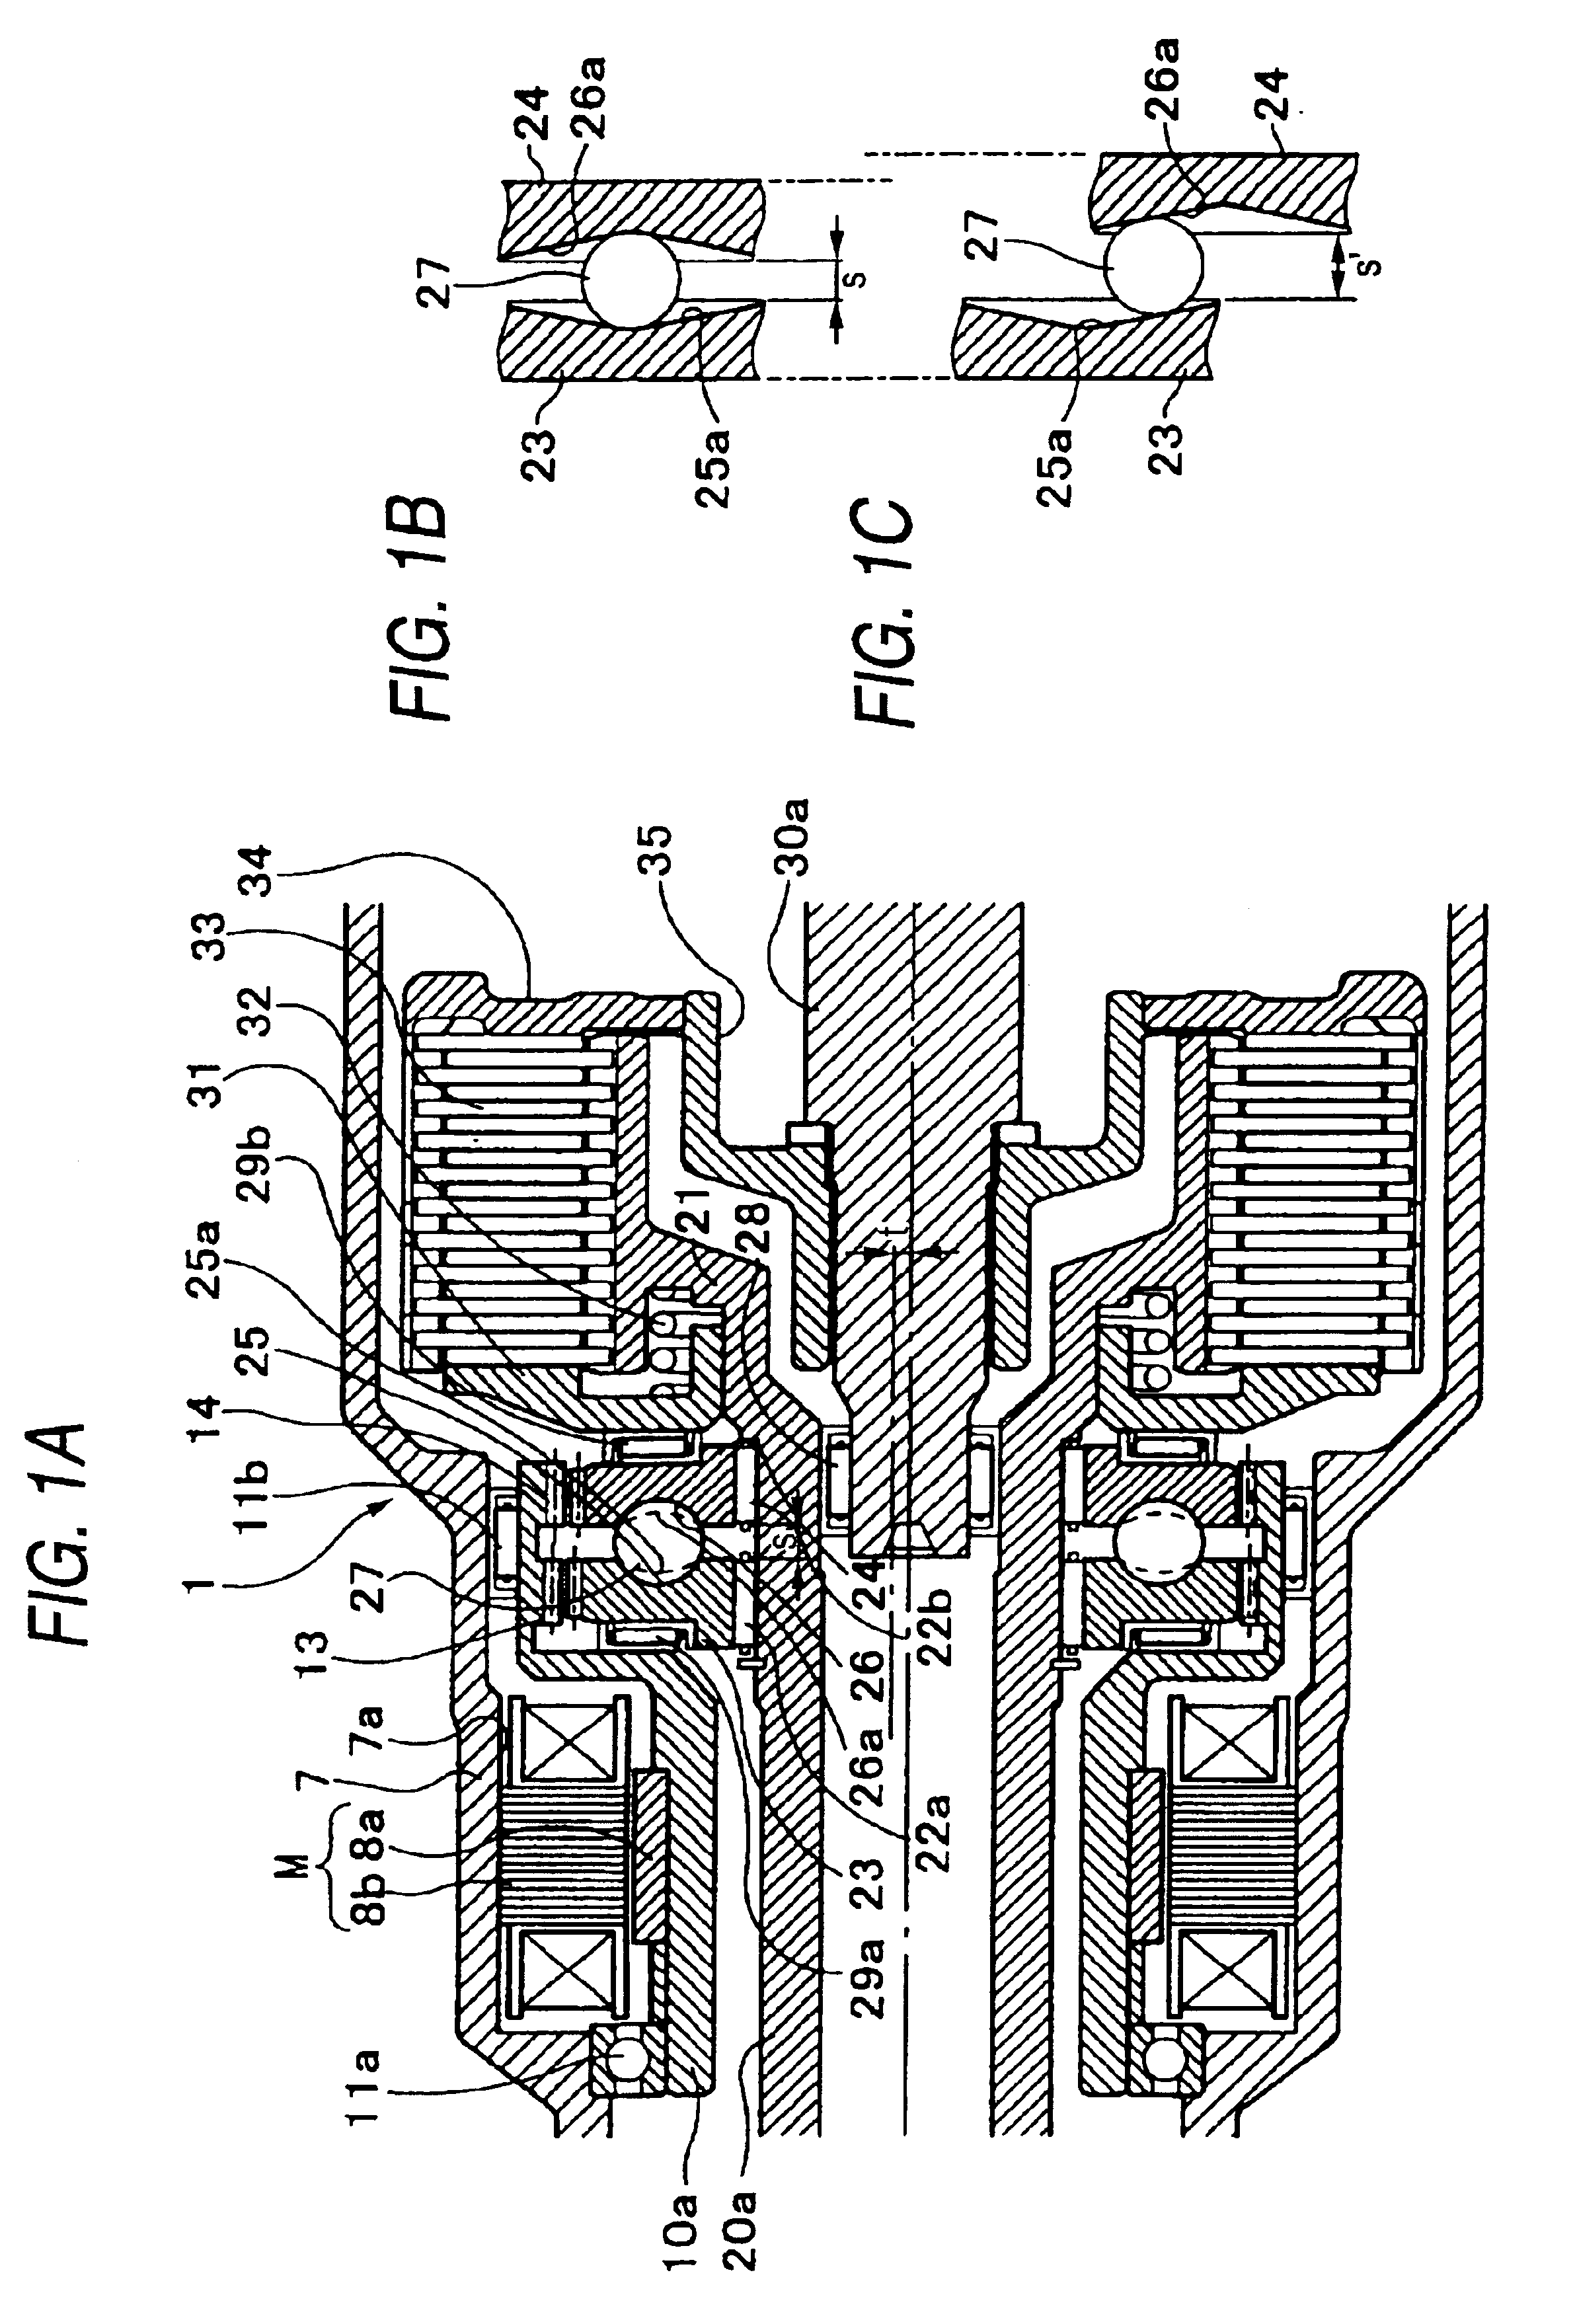 Transmission actuator